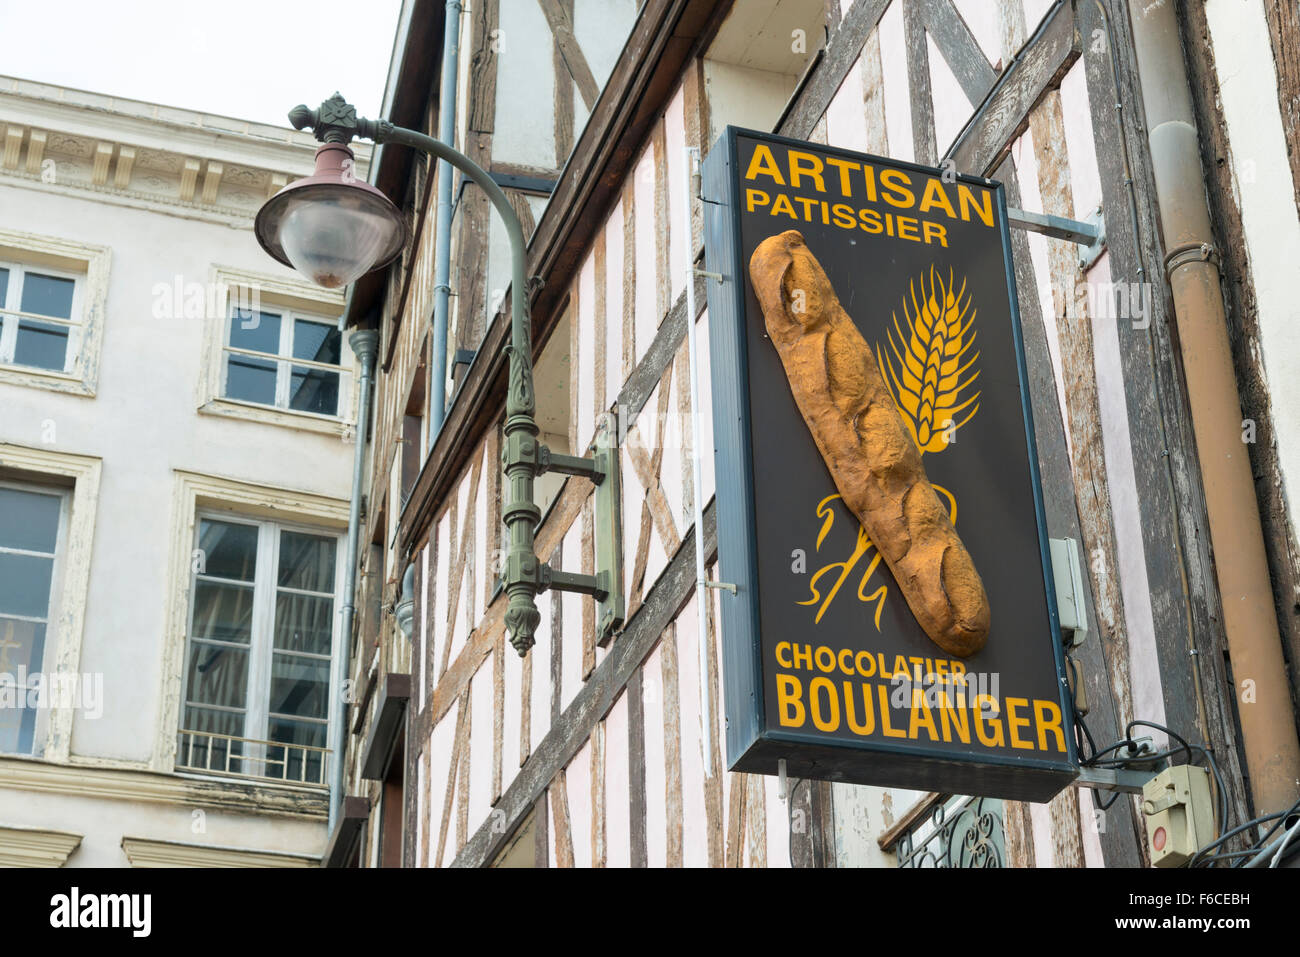 Un boulangers artisans shop sign in France, ou Pattissier chocolatier boulangerie et Banque D'Images